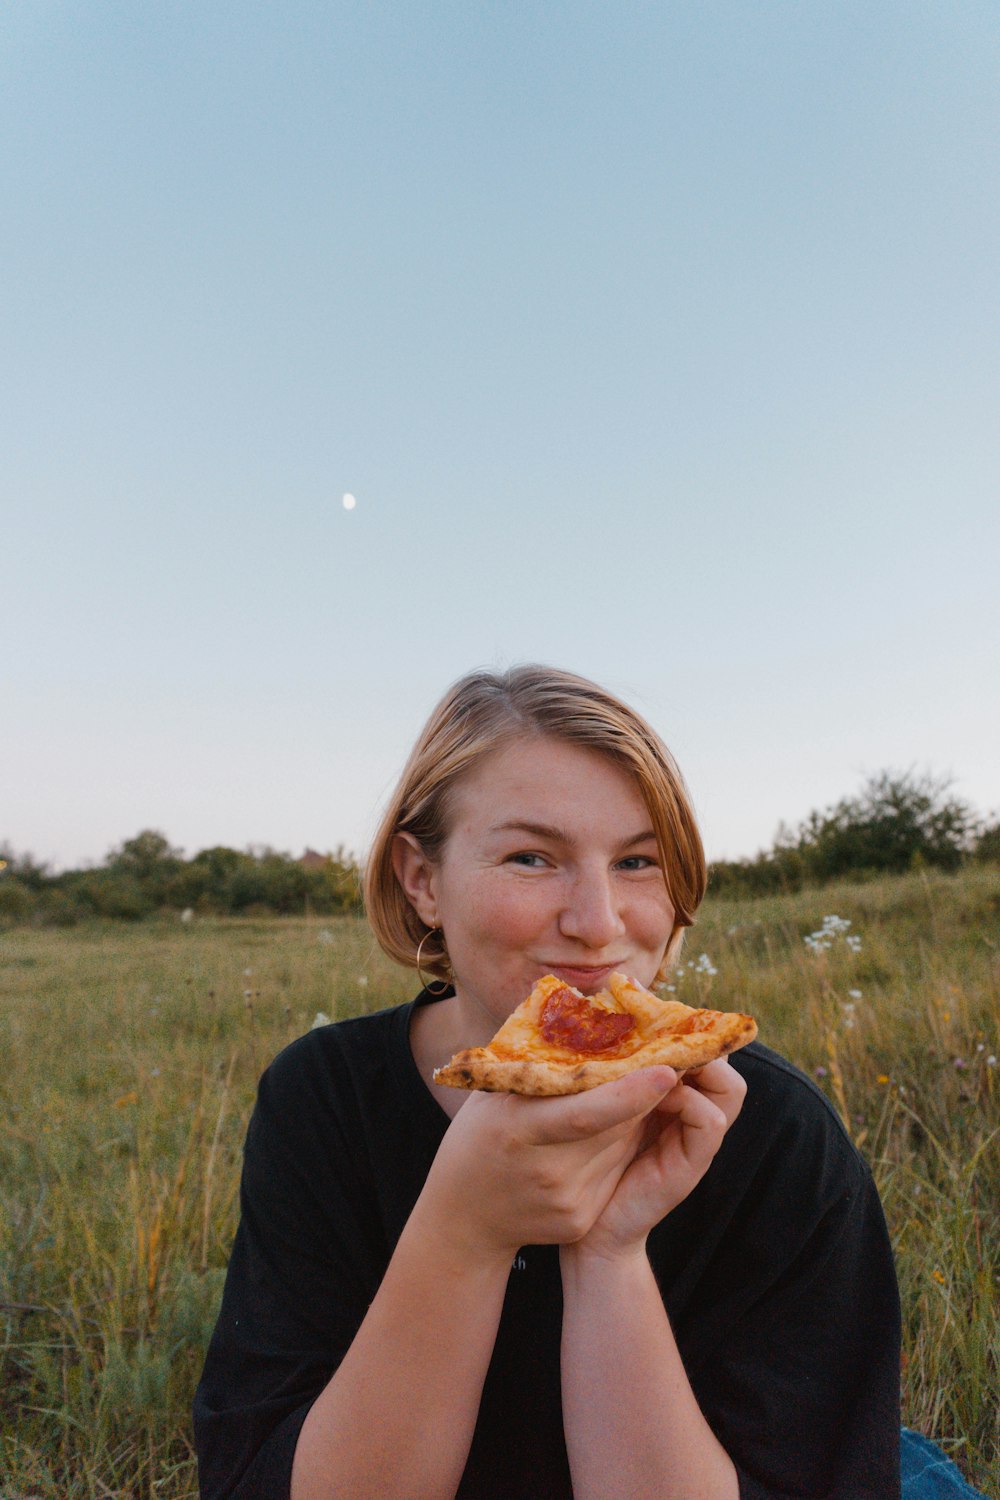 Una mujer sentada en un campo comiendo una rebanada de pizza